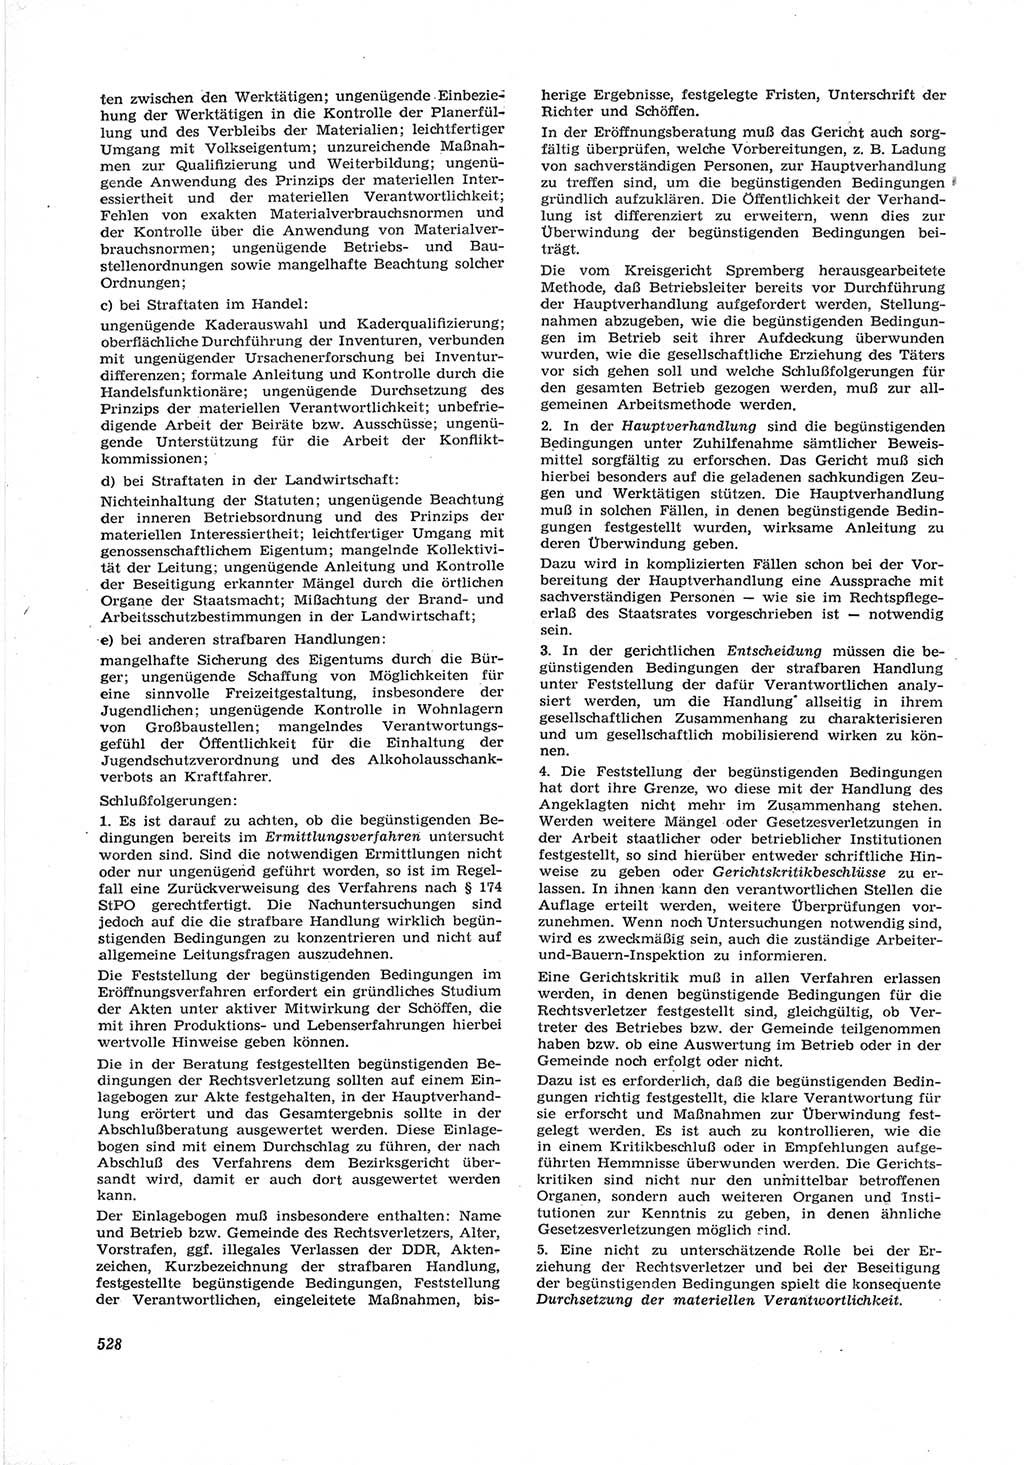 Neue Justiz (NJ), Zeitschrift für Recht und Rechtswissenschaft [Deutsche Demokratische Republik (DDR)], 17. Jahrgang 1963, Seite 528 (NJ DDR 1963, S. 528)